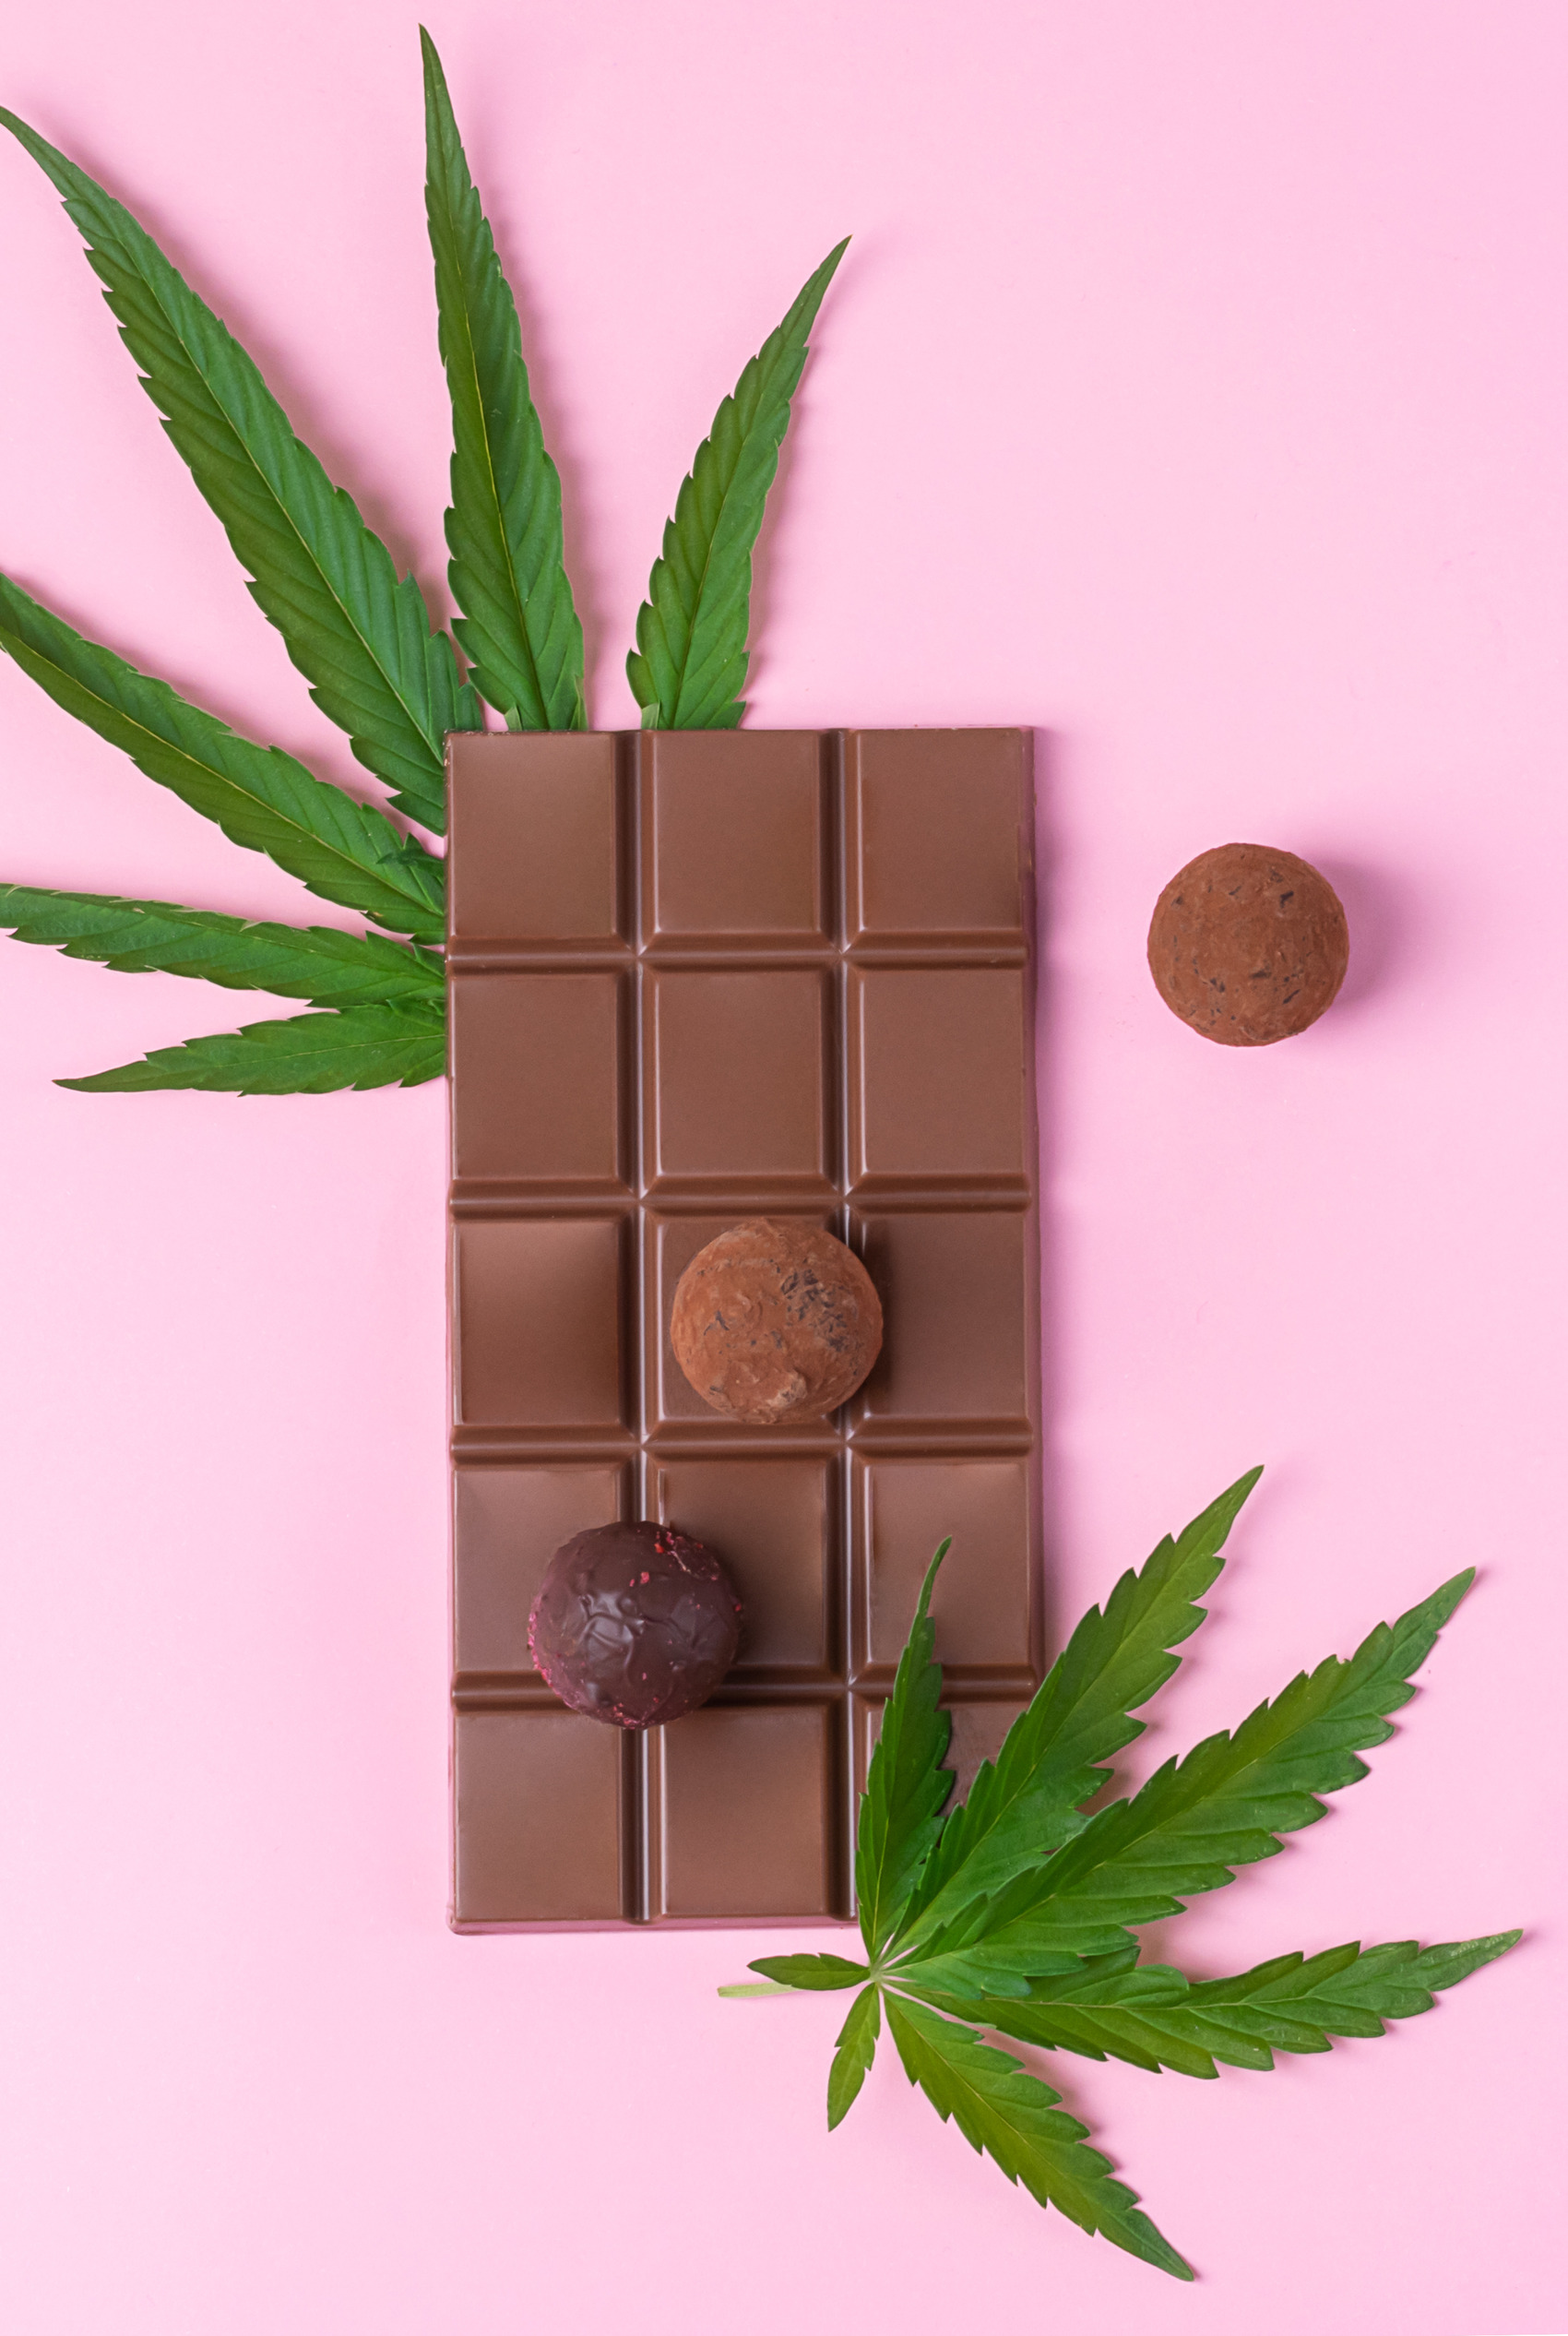 chocolate-whole-bar-candy-cannabis-leaf-of-fresh